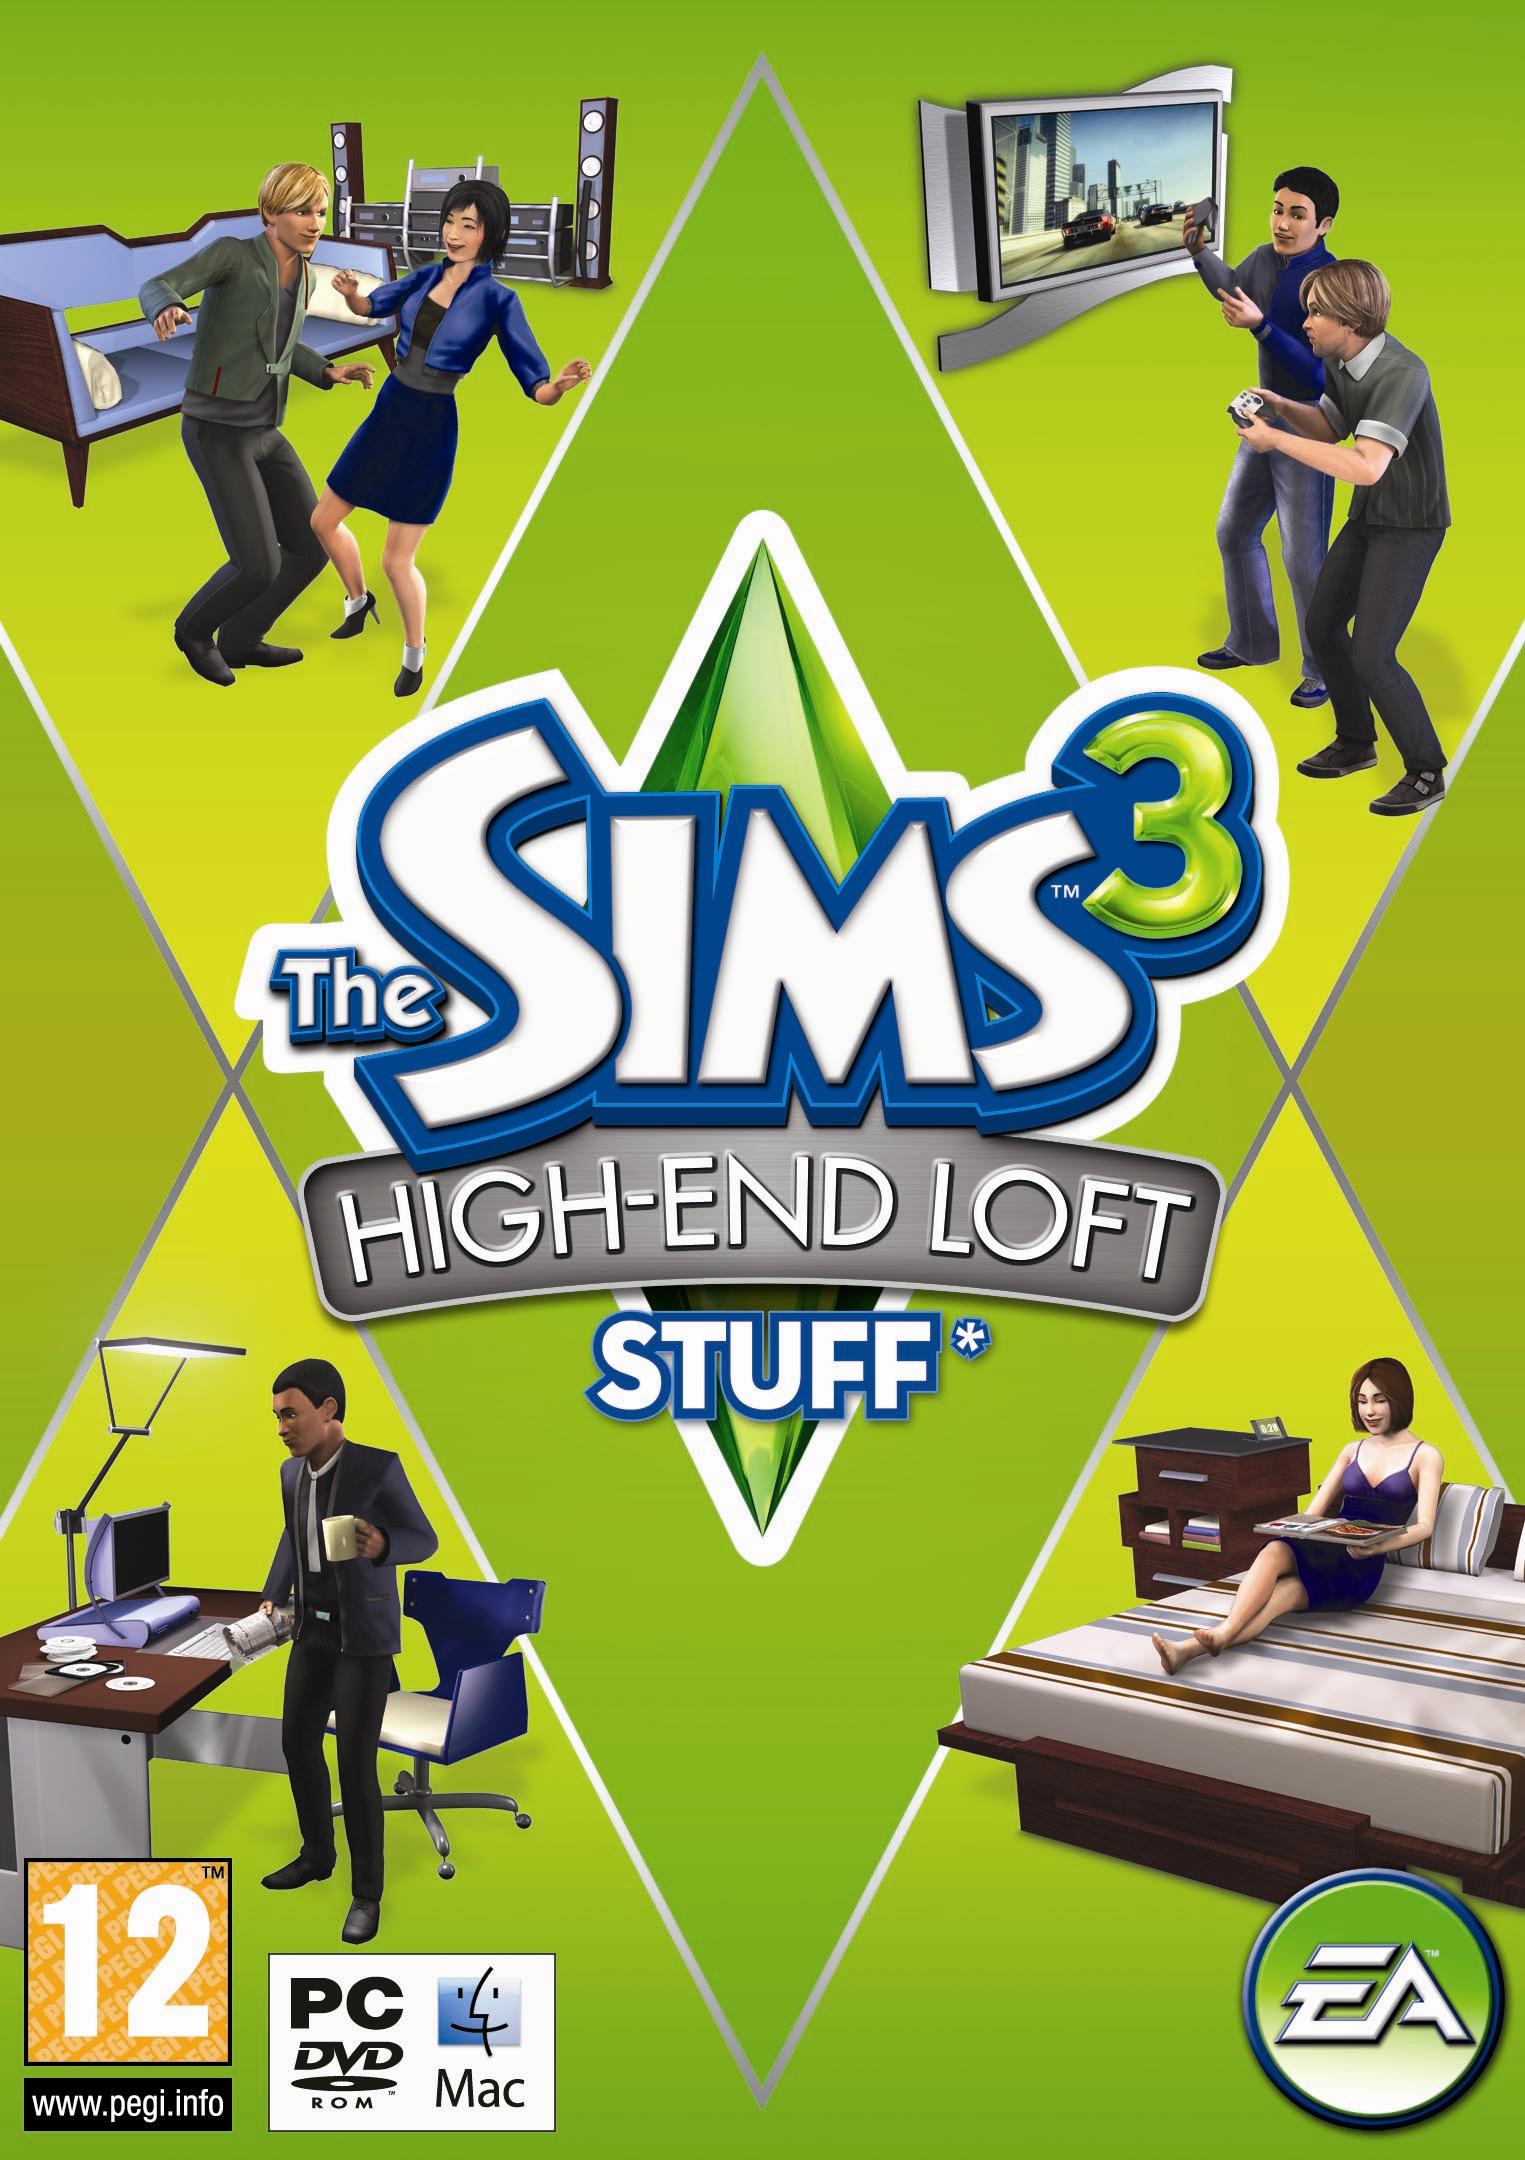 Sims 3 Erweiterungen Wikipedia